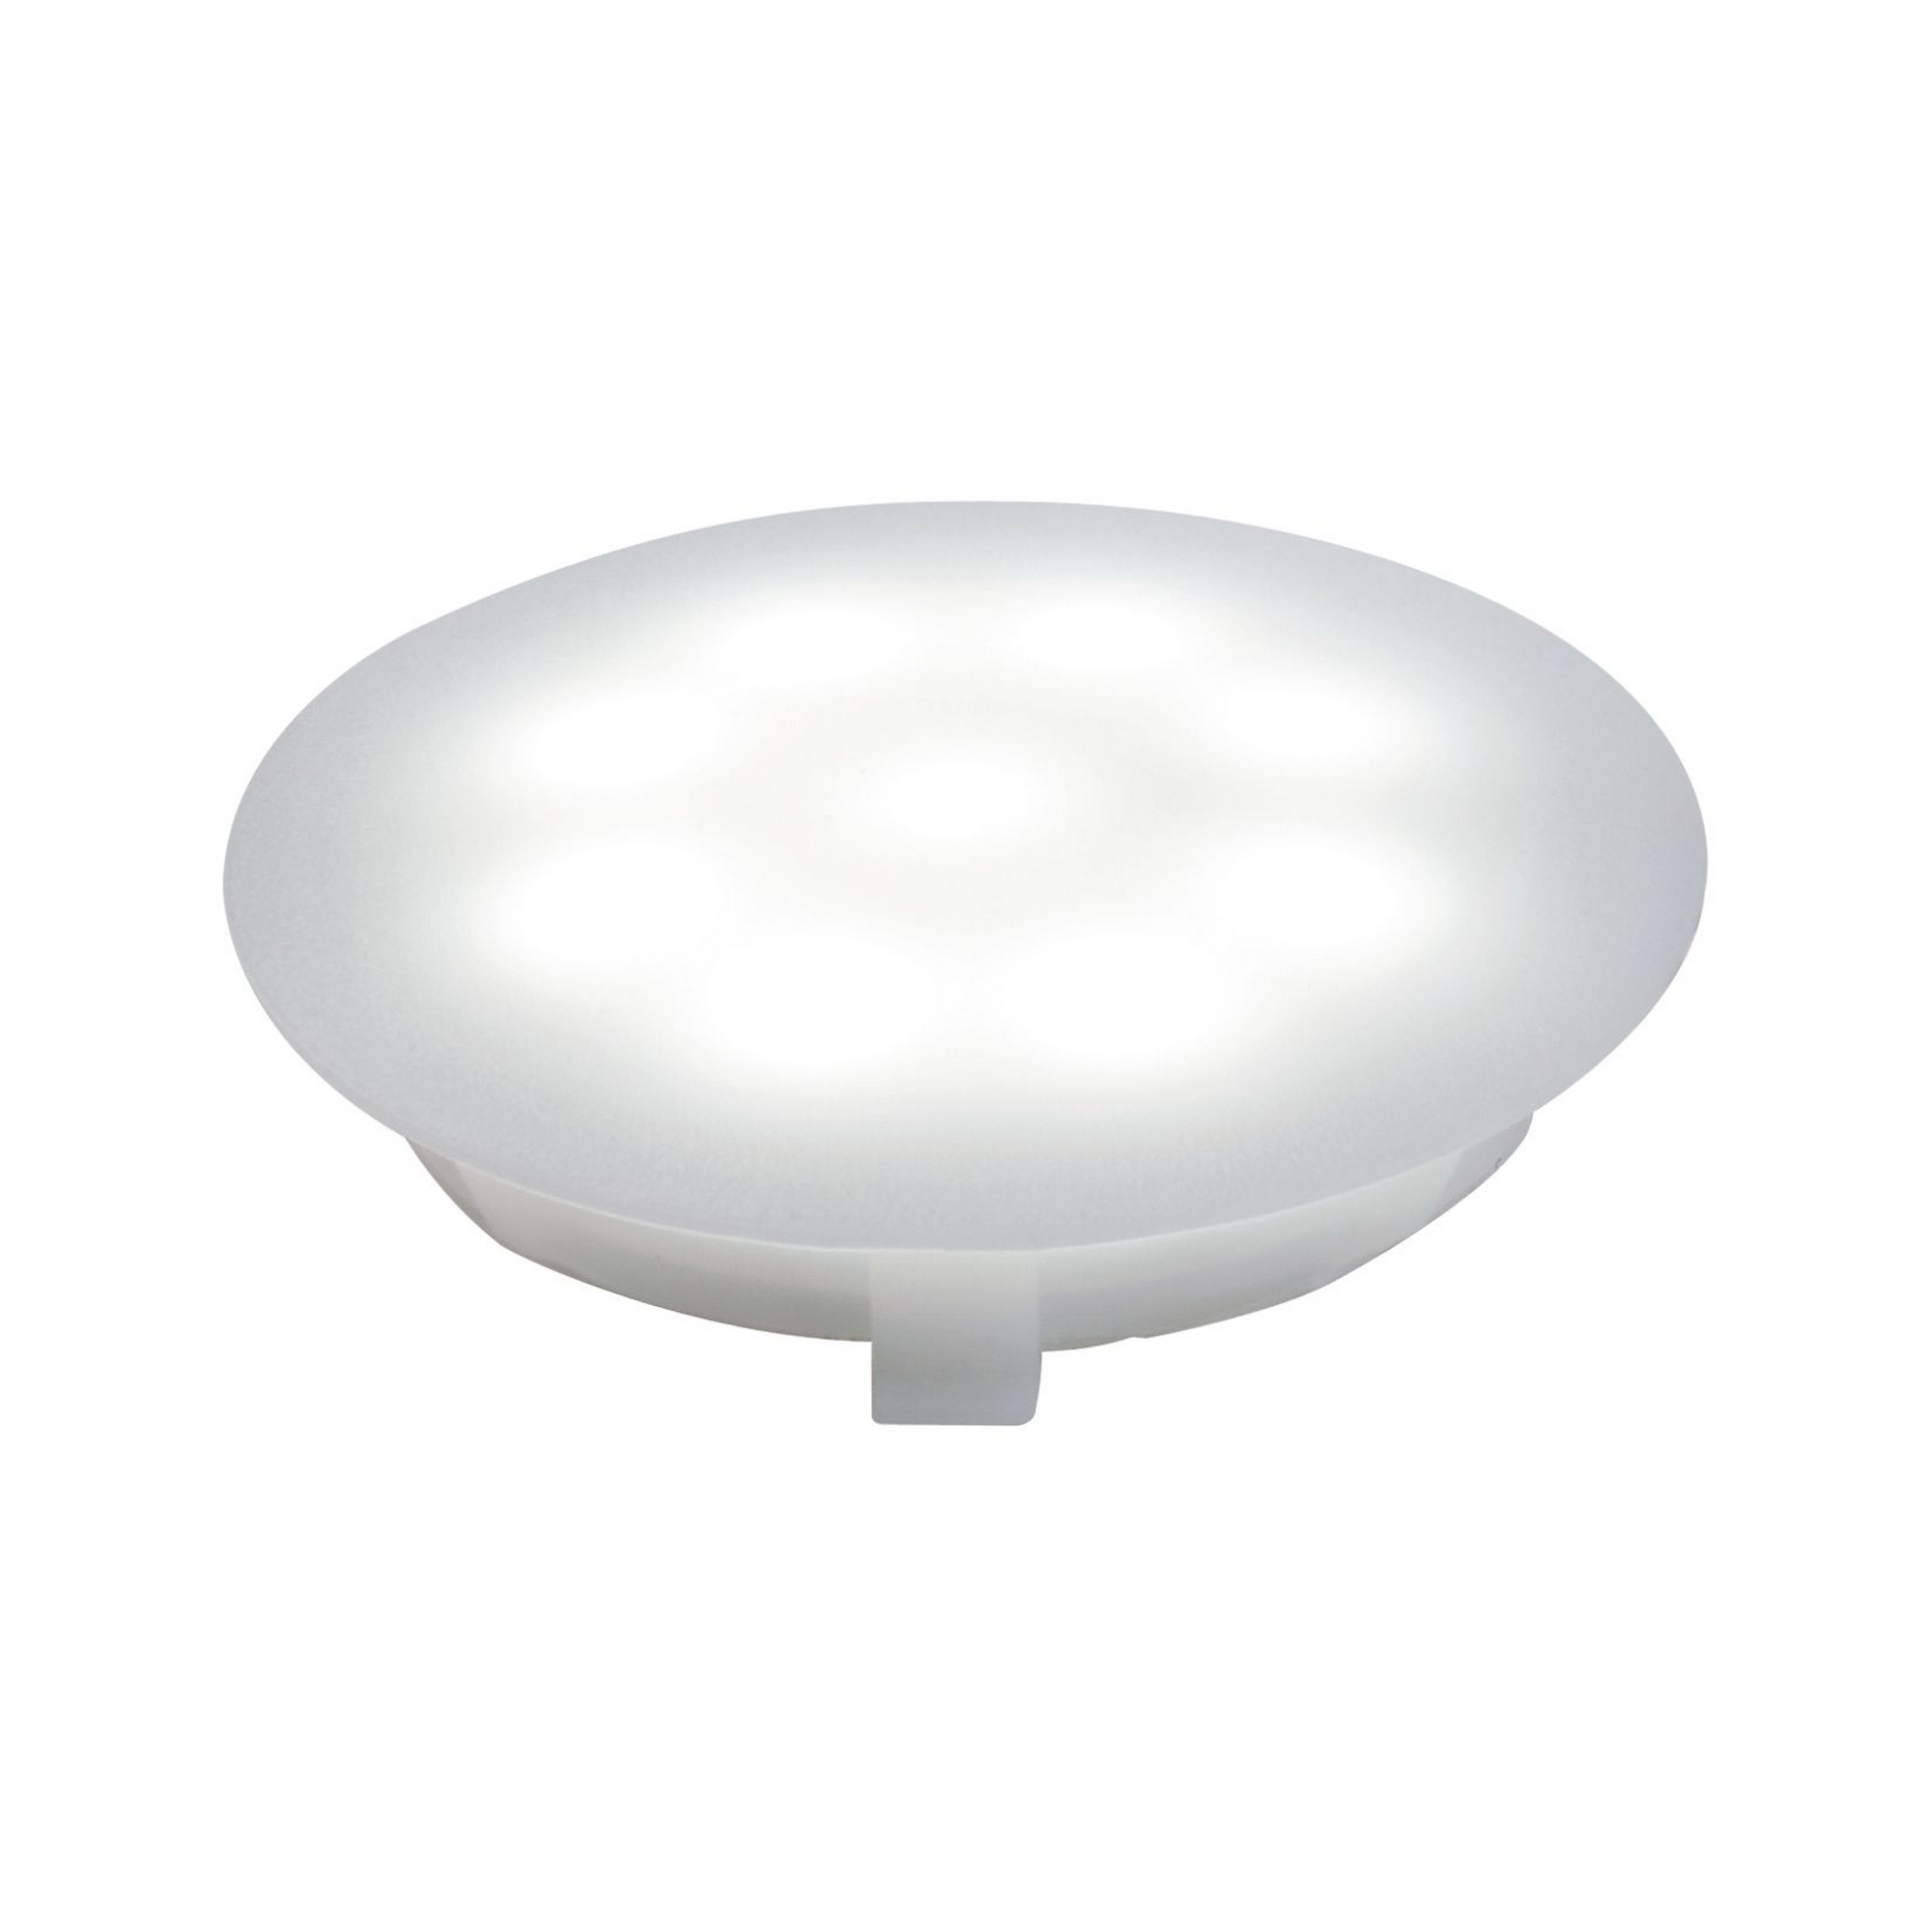 LED-Einbauleuchte 'UpDownlight' Ø 45 mm 6500 K tageslichtweiß 1 W satin, 1 Stück + product picture